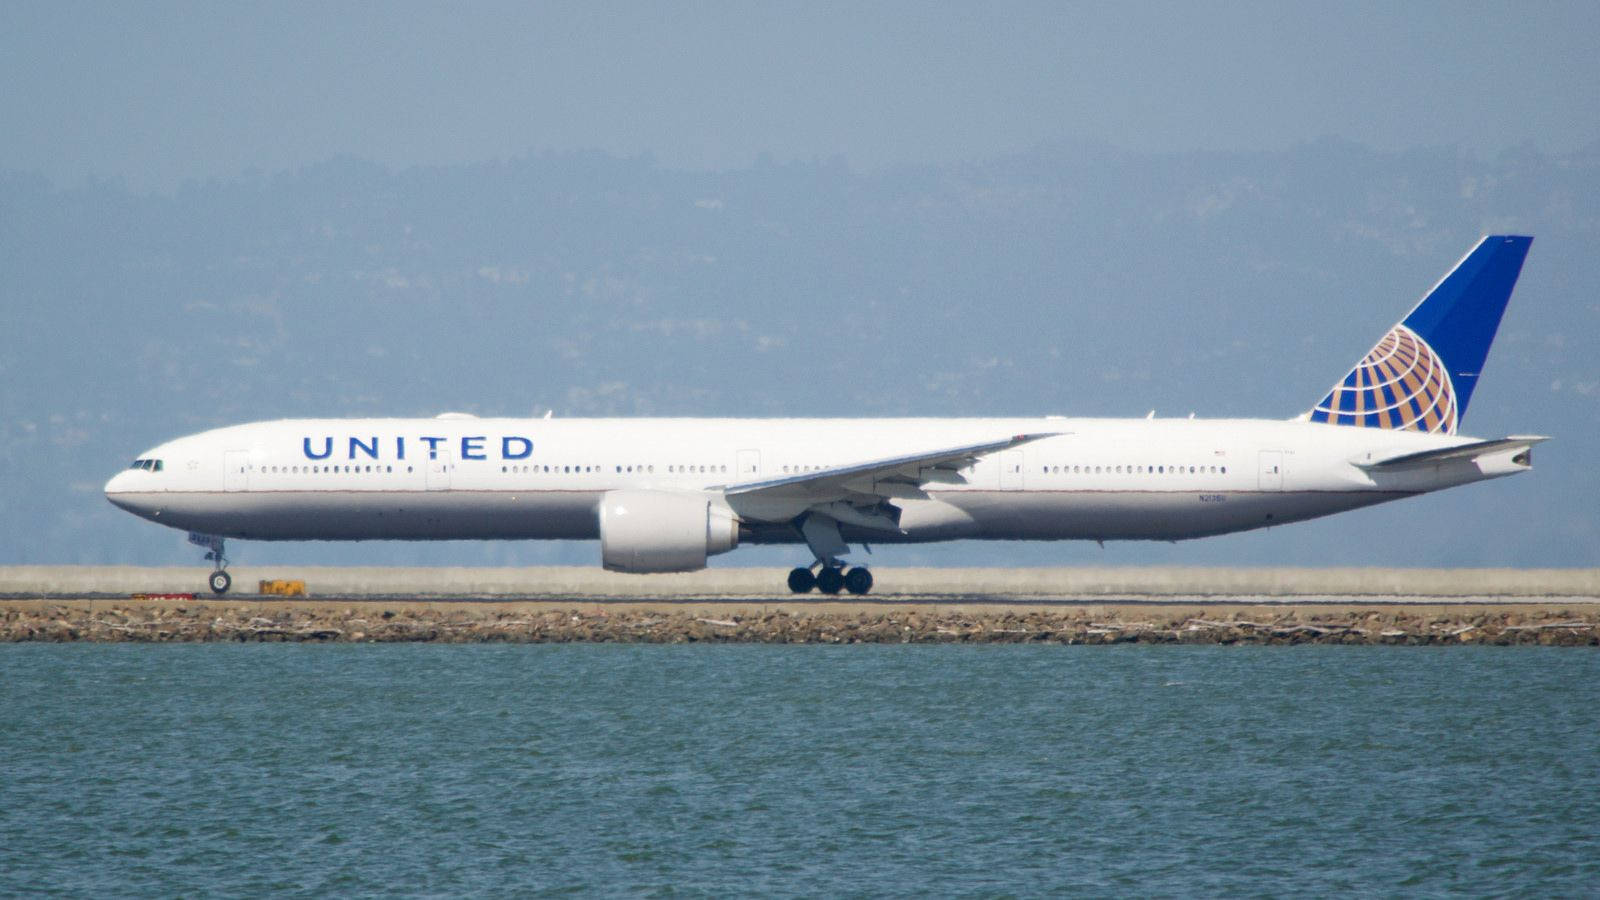 United Airlines Plane On Ocean Runway Wallpaper